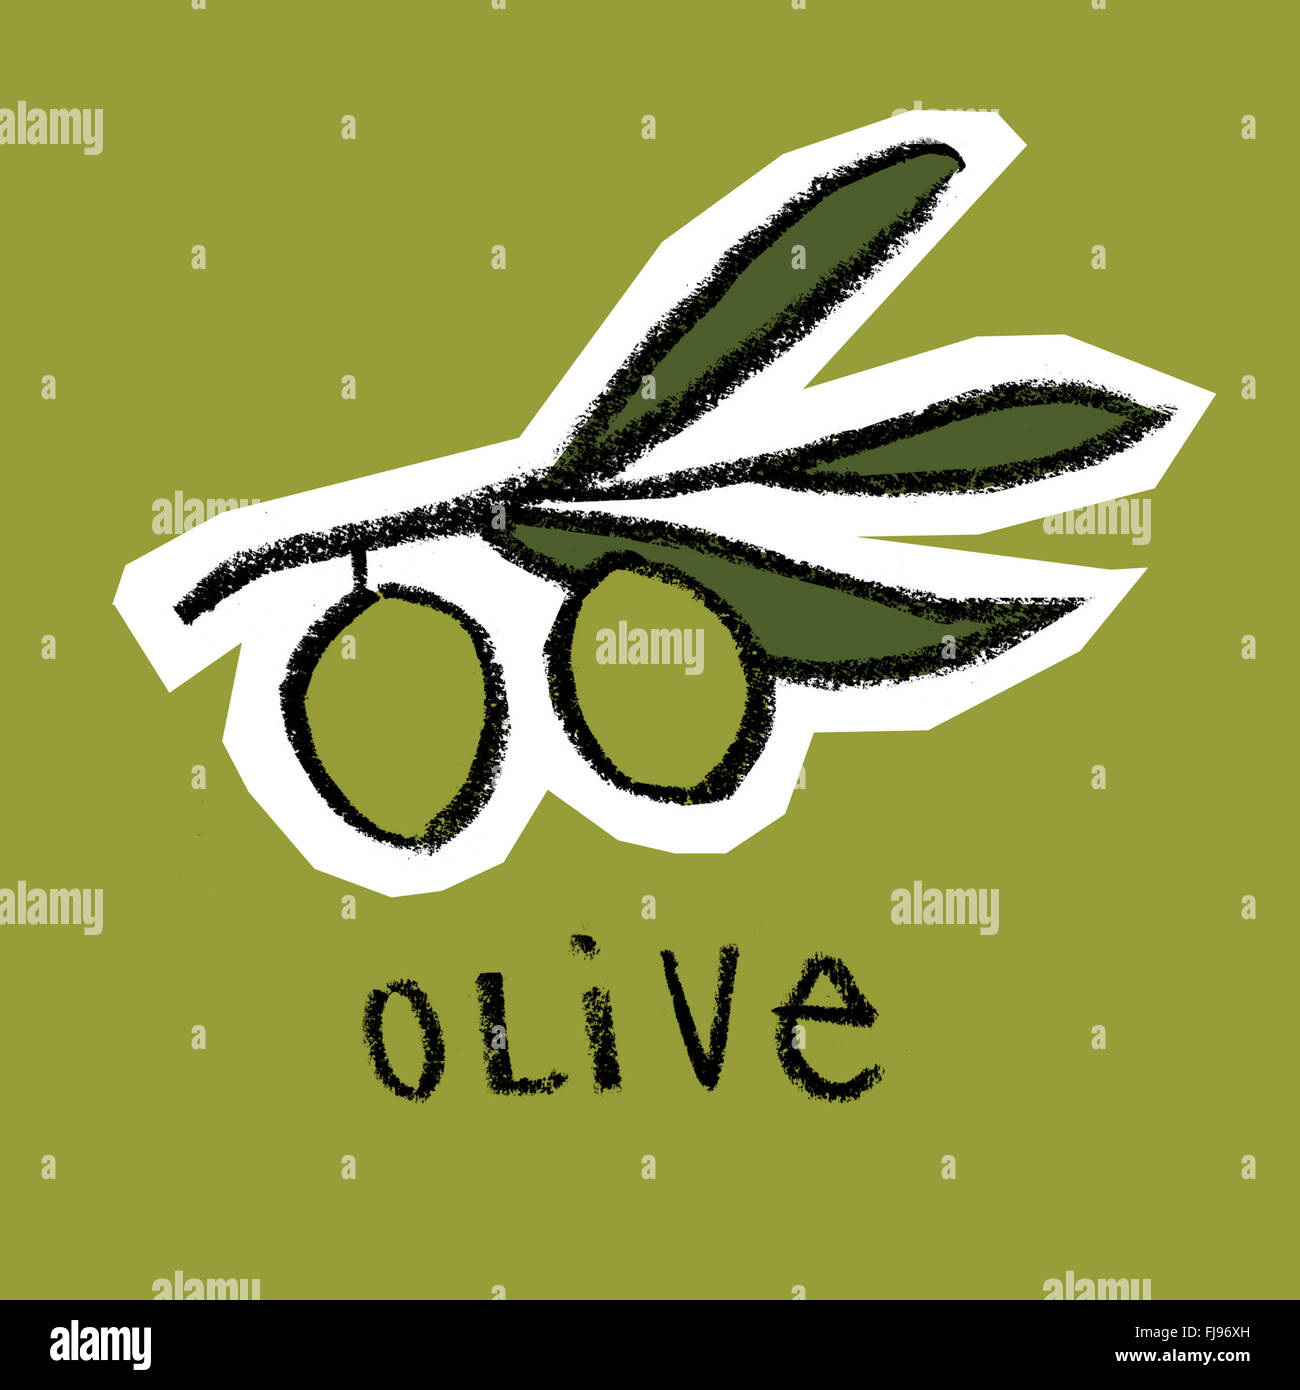 Branche d'olivier sur fond vert Banque D'Images